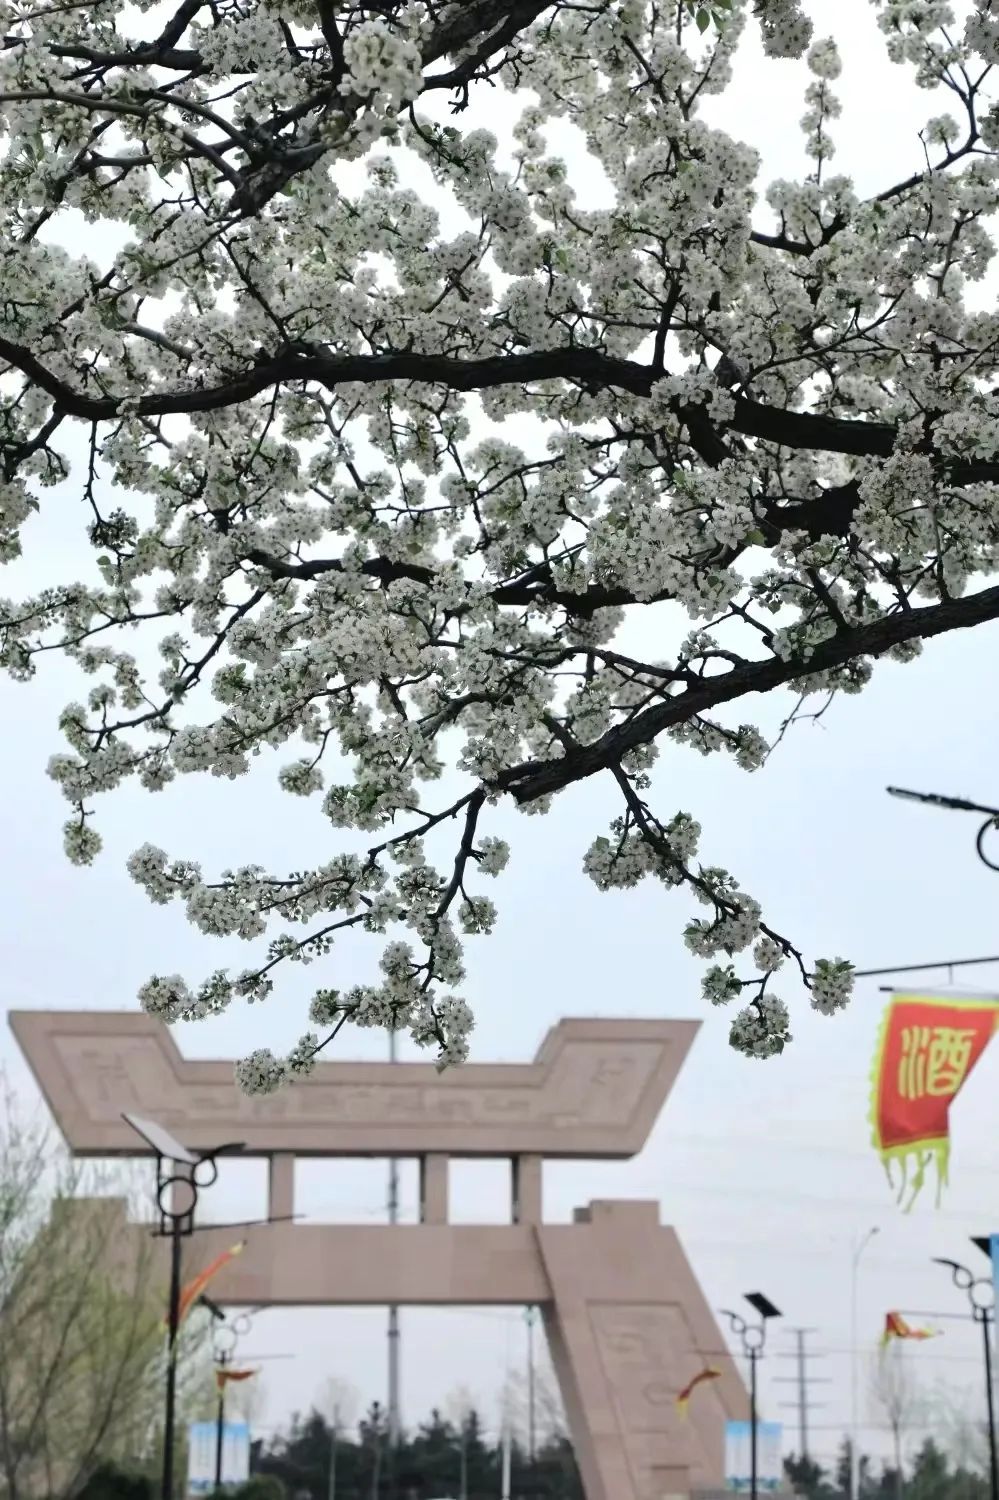 世界风筝公园落户潍坊，为何选择了齐鲁酒地